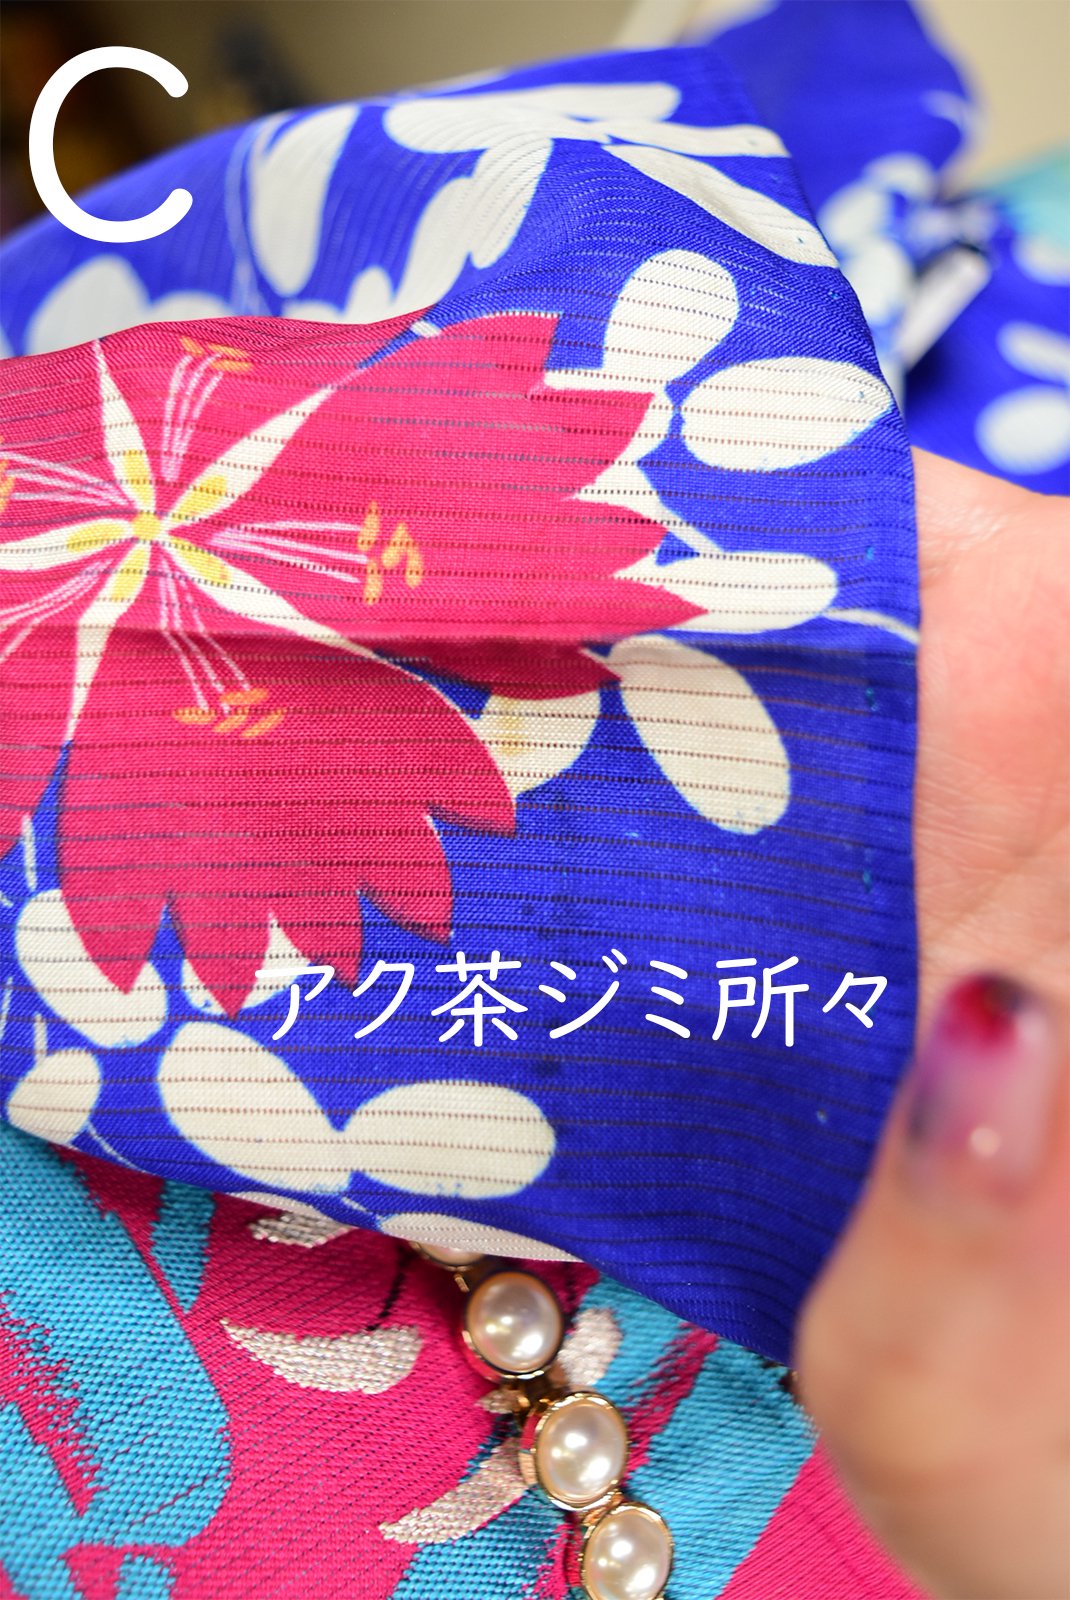 桔梗瑠璃色に萩と撫子美しいアンティーク絽の夏着物 - アンティーク